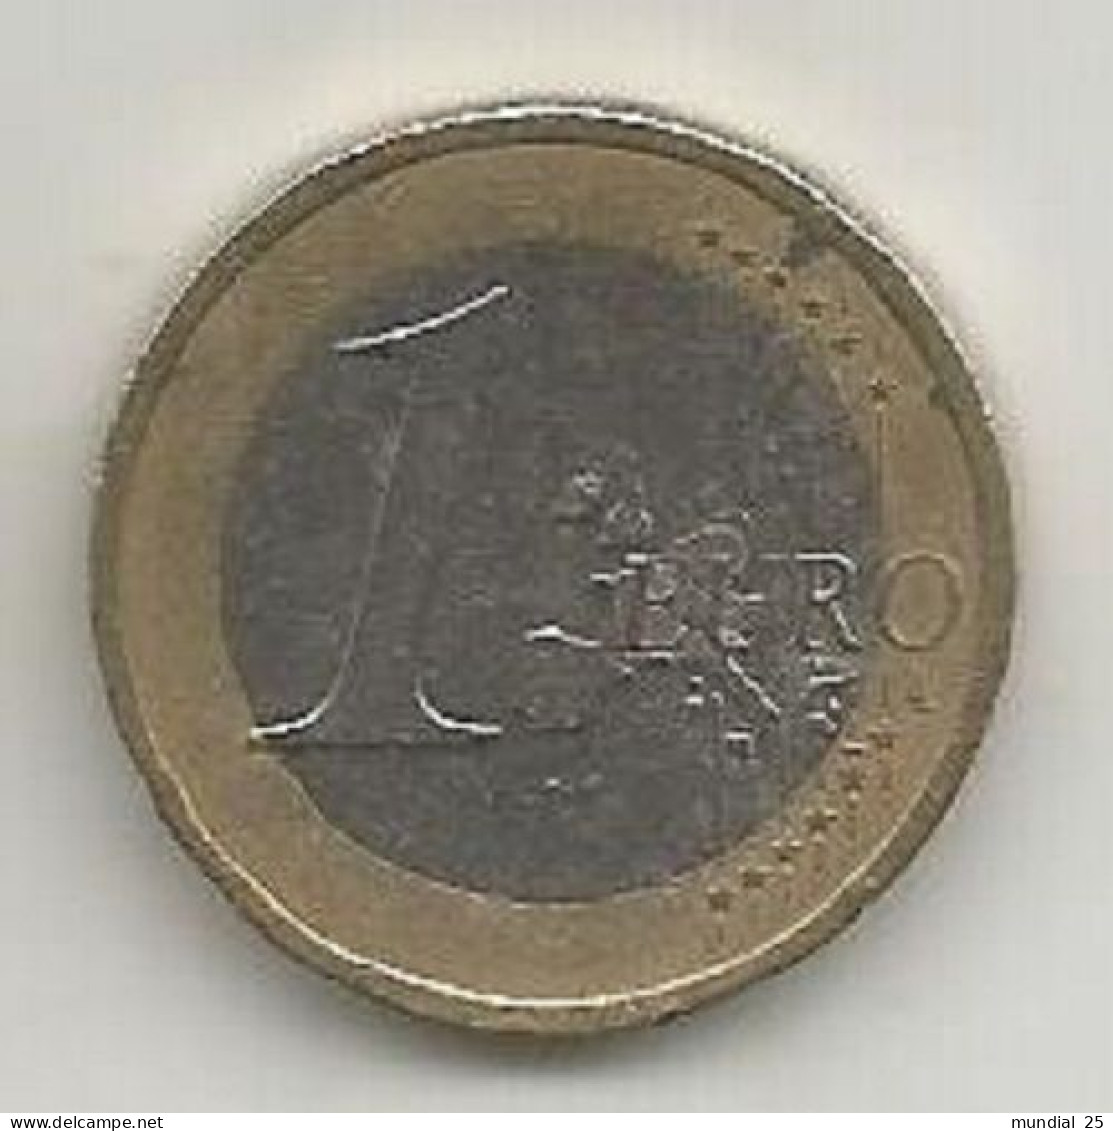 GERMANY 1 EURO 2002 (A) - Deutschland